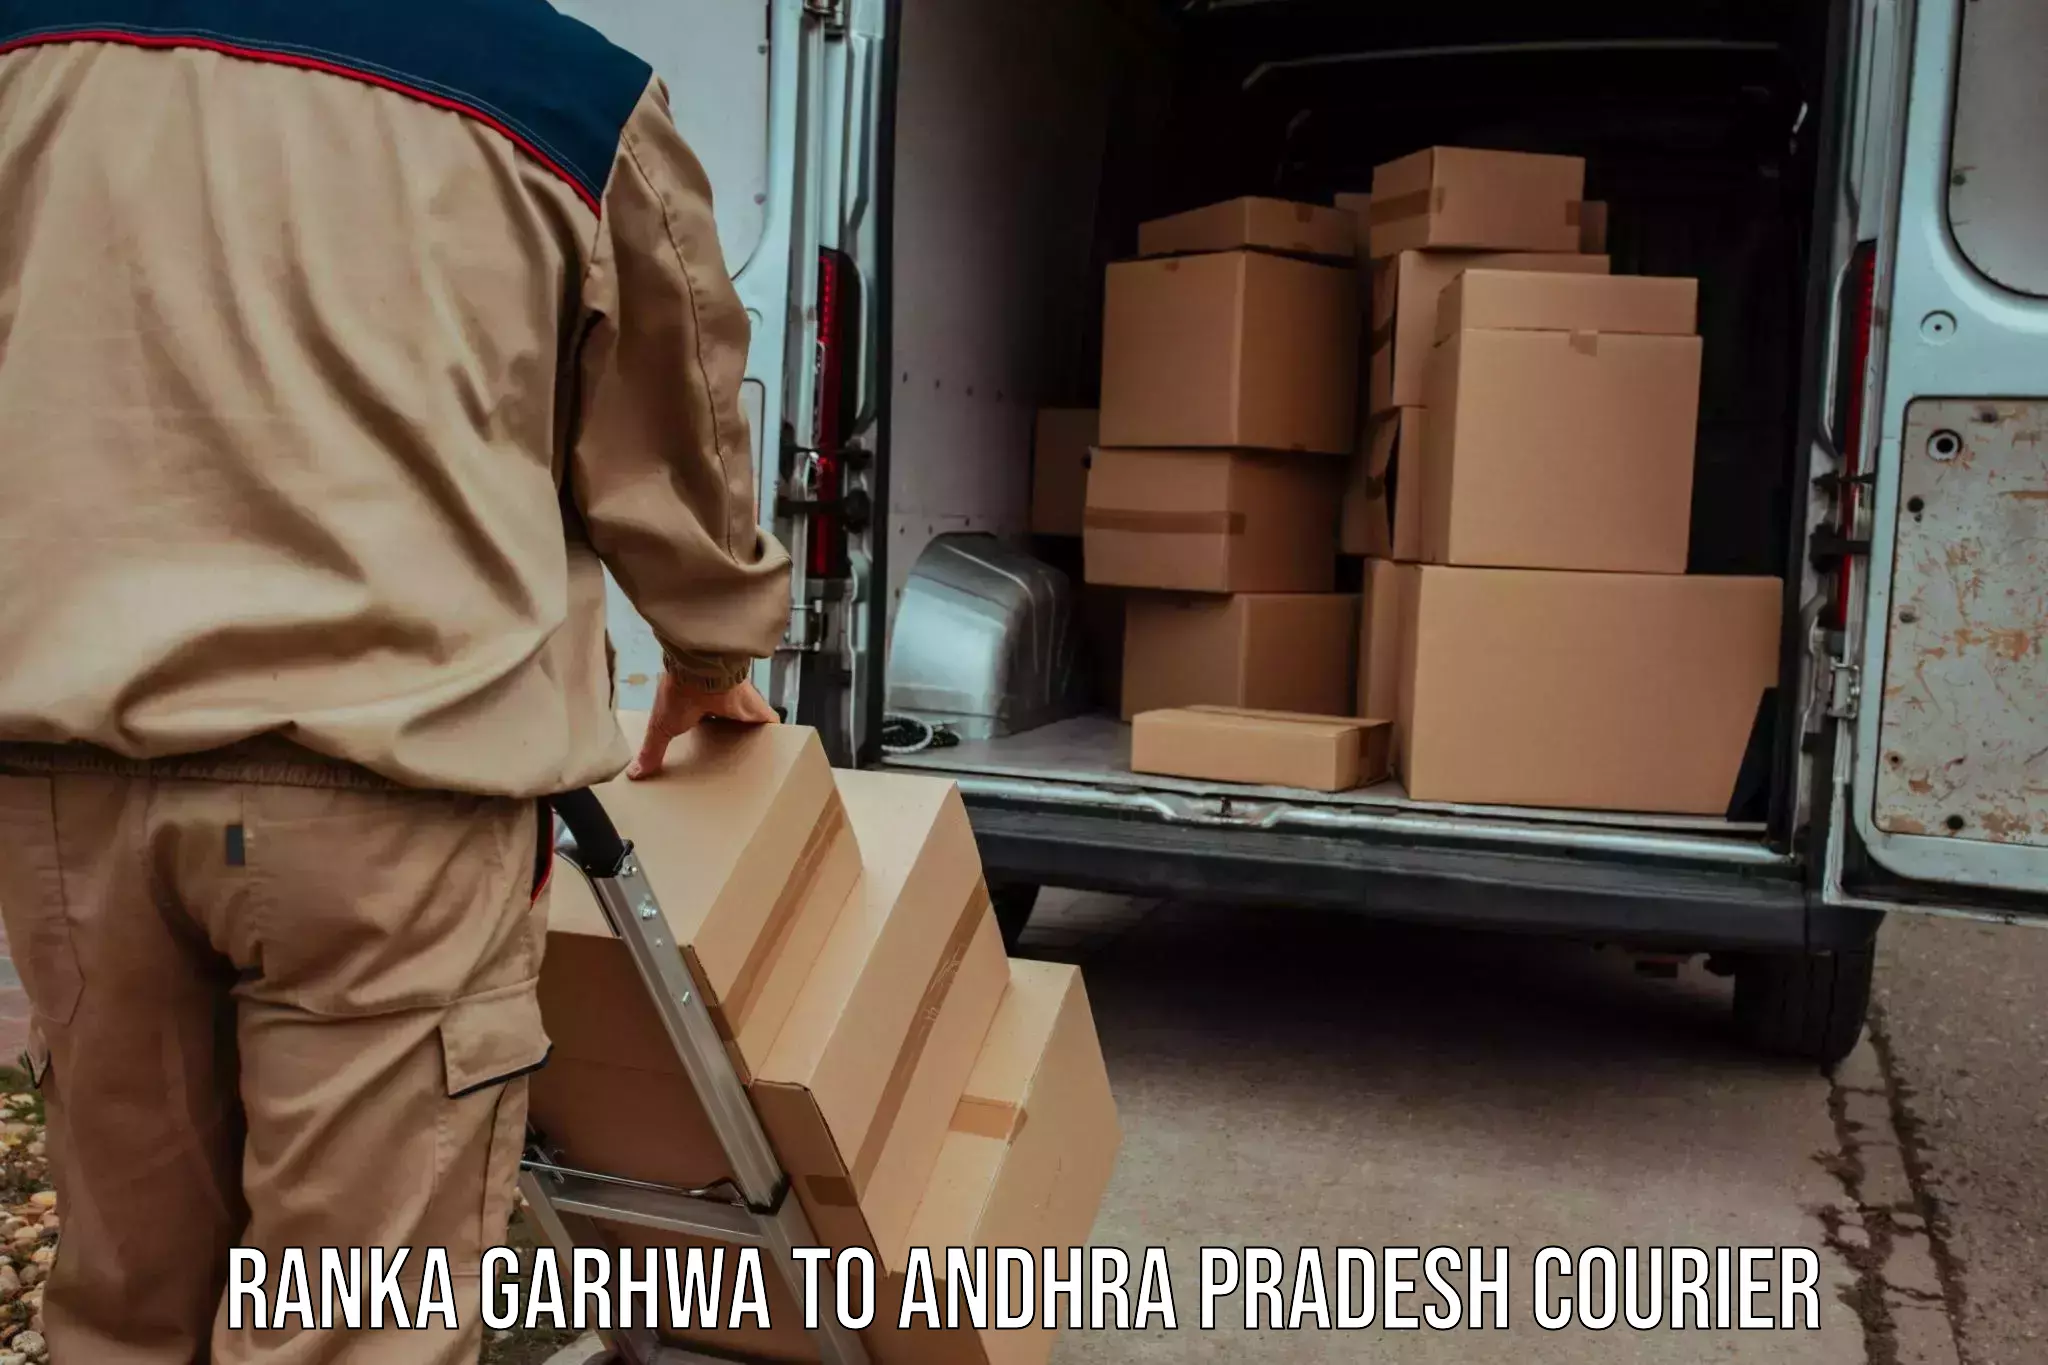 Smart parcel delivery Ranka Garhwa to Parvathipuram